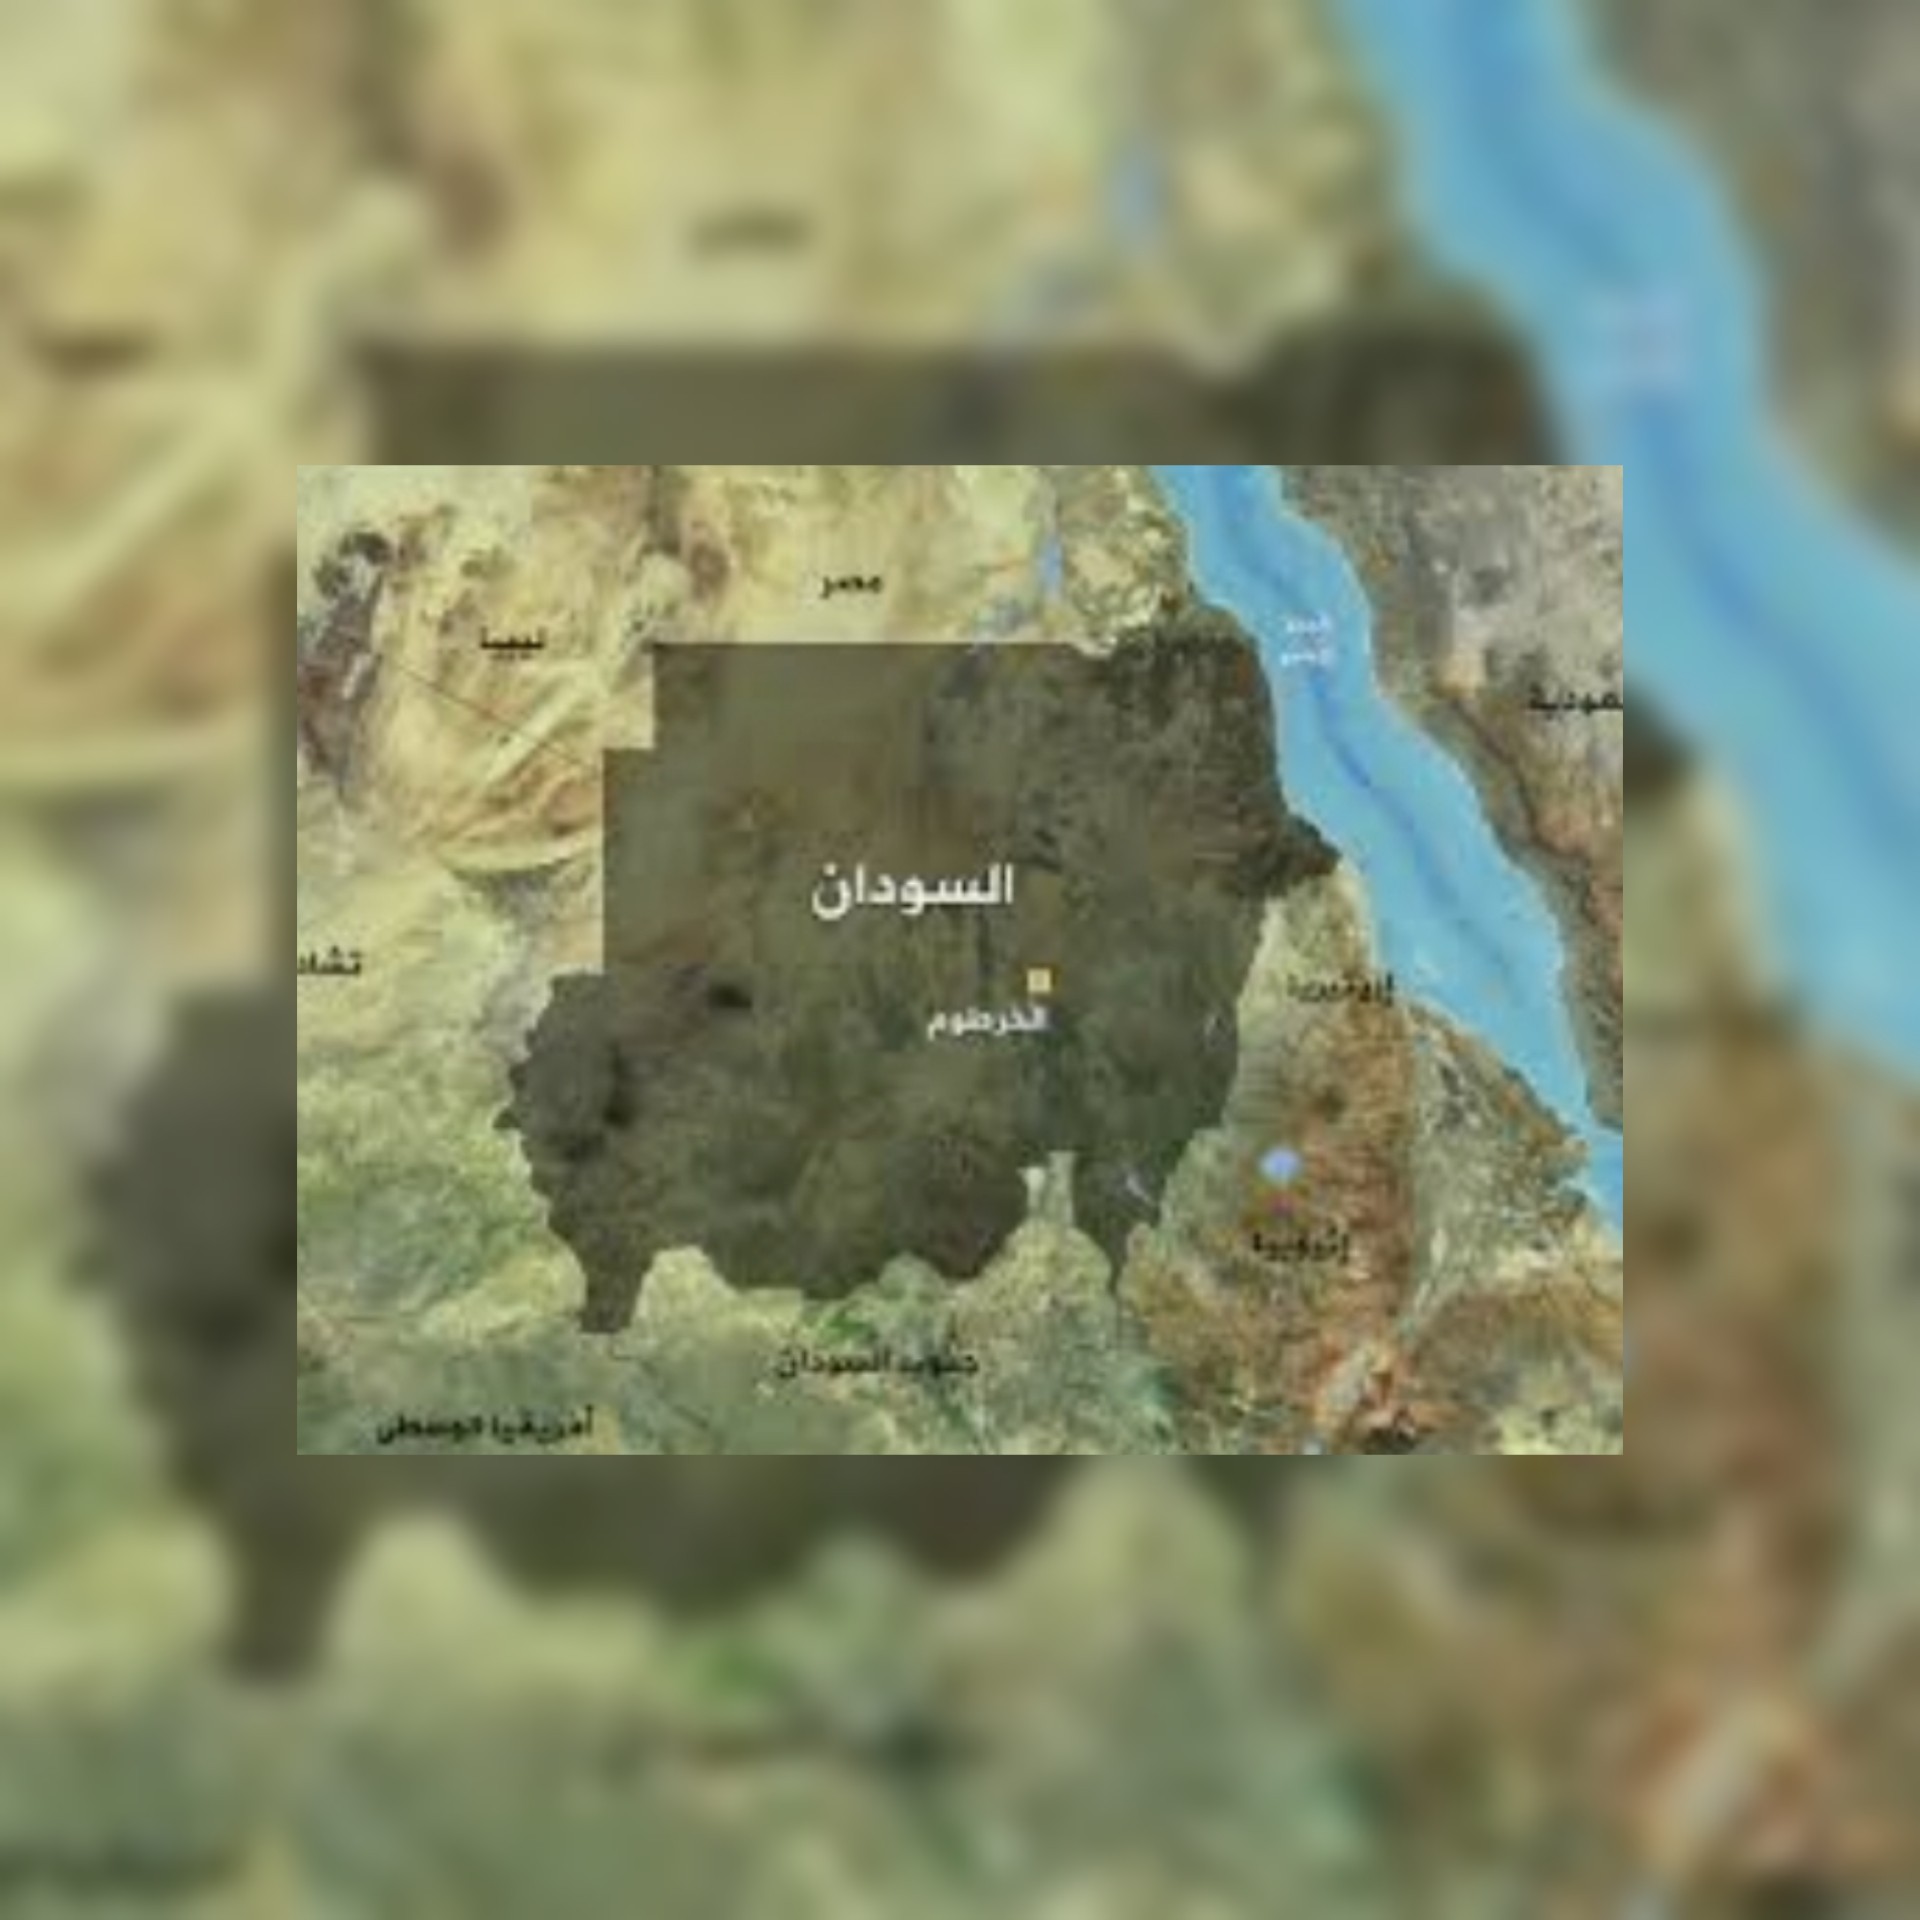 السودان : واشنطن تحث الخرطوم على التقدم باتجاه الحكم المدني